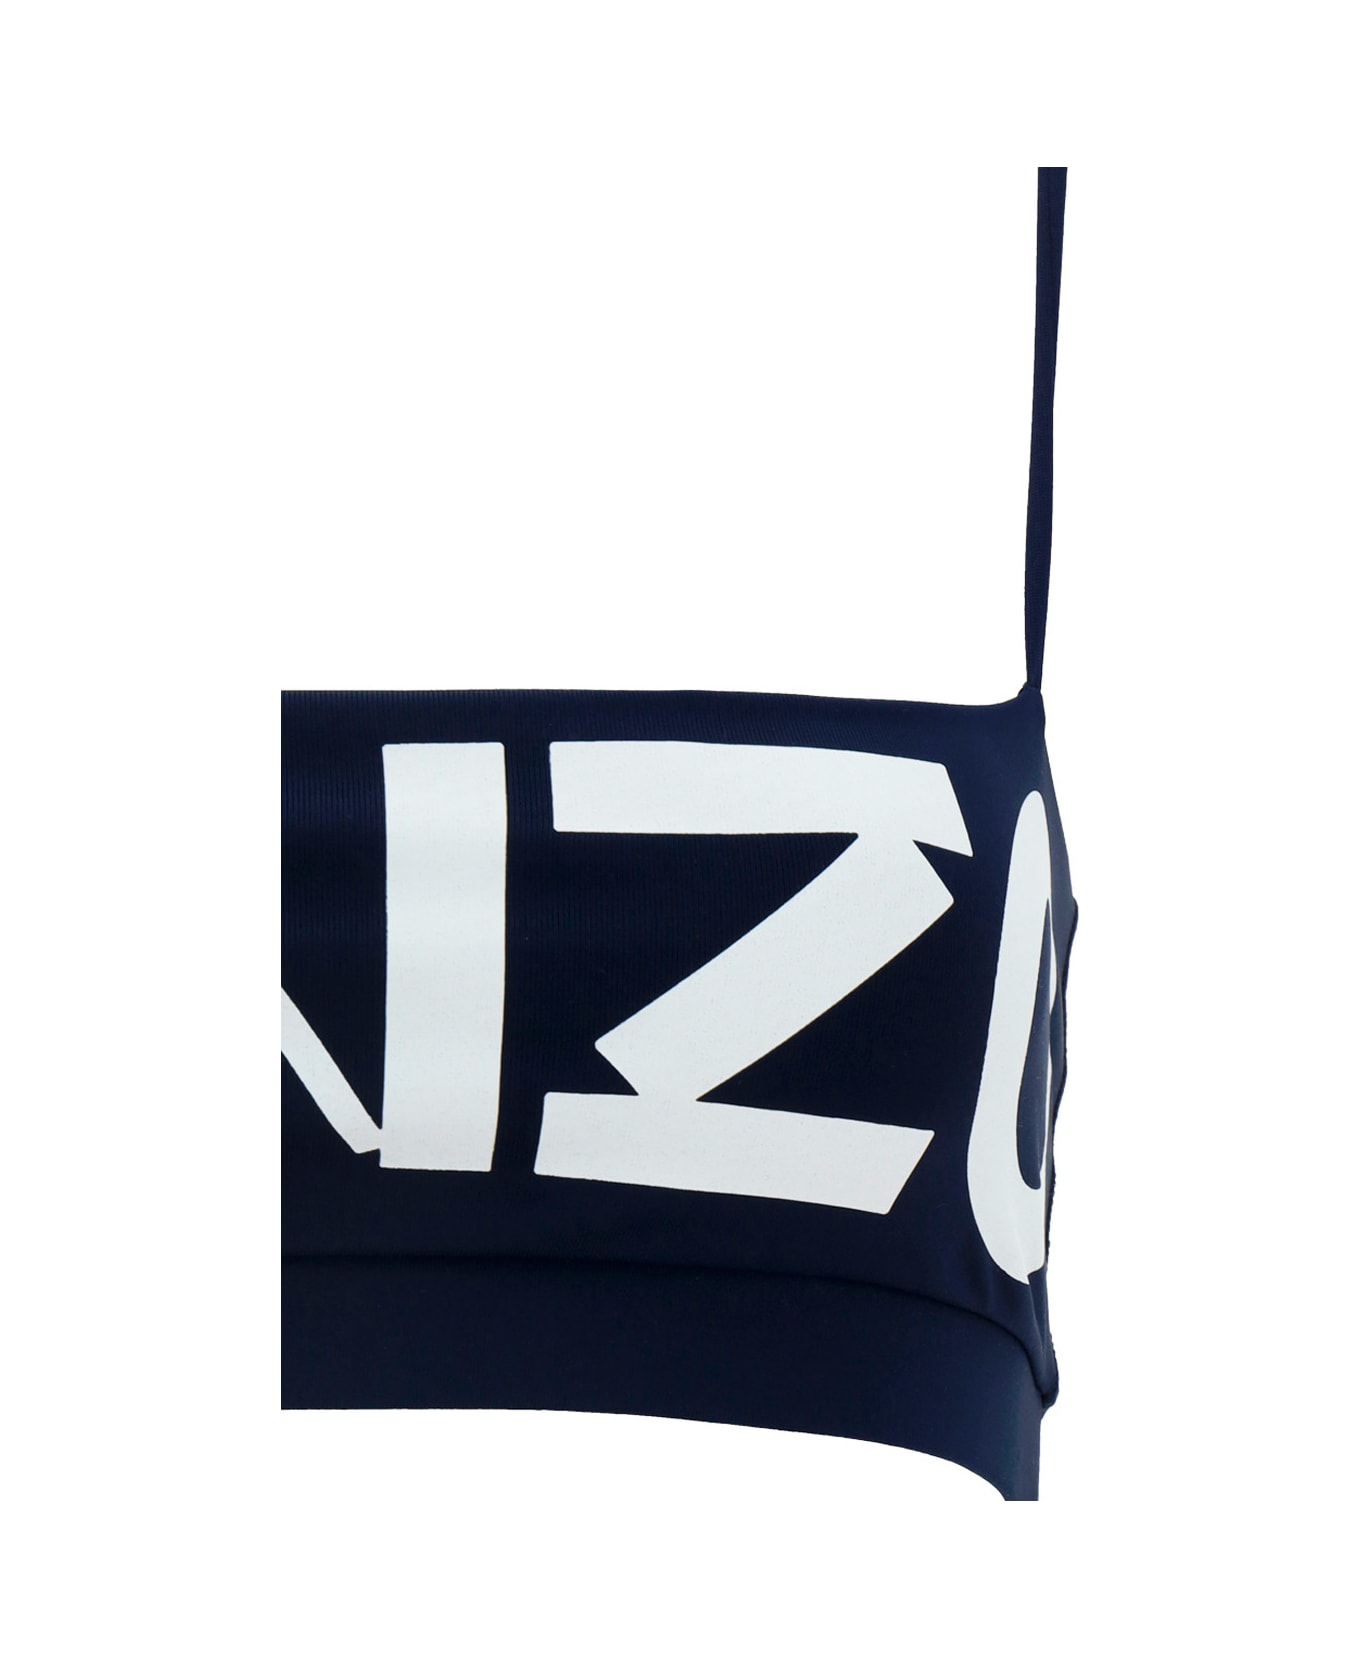 Kenzo Logo Print Cropped Top - B Bleu Nuit ブラジャー